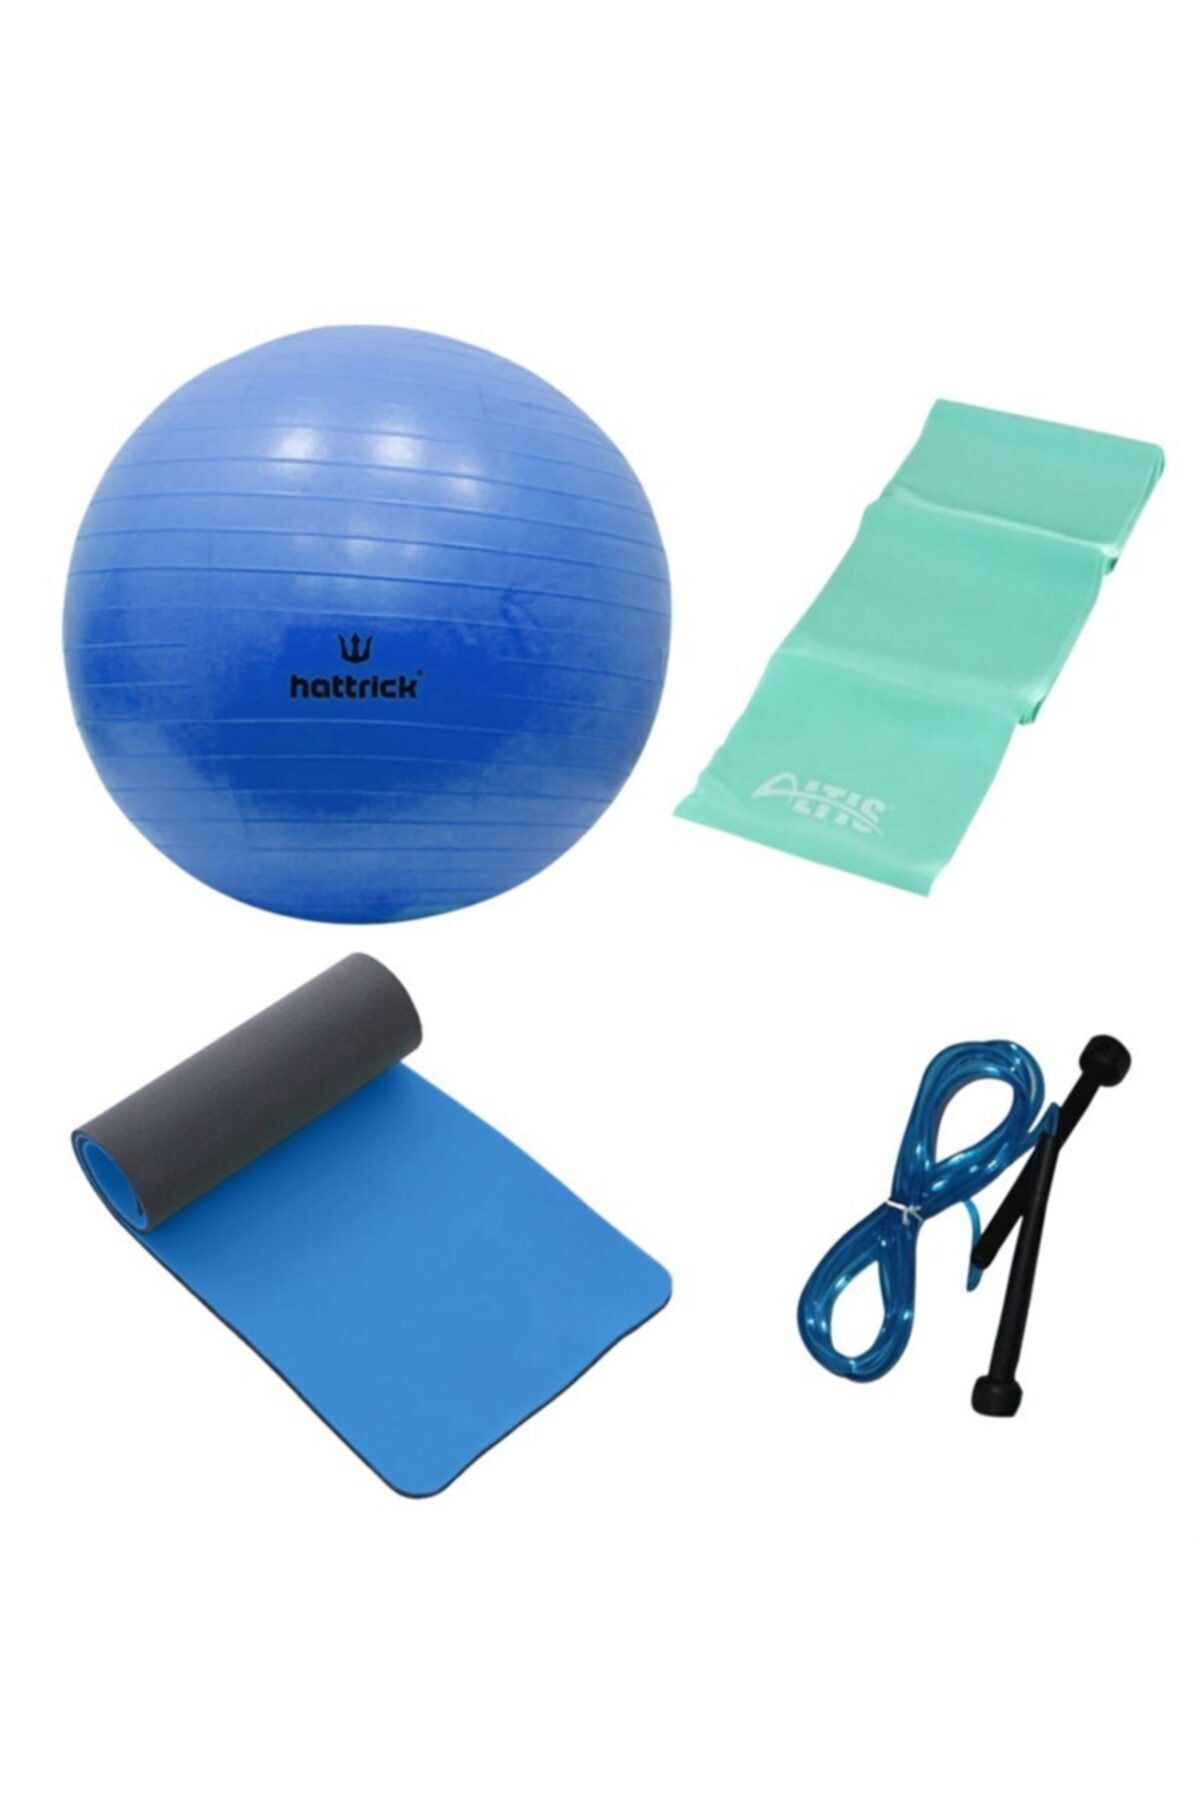 Dafron Mavi Pilates Topu Direnç Lastiği Mat Ve Atlama Ipi 4'lü Set